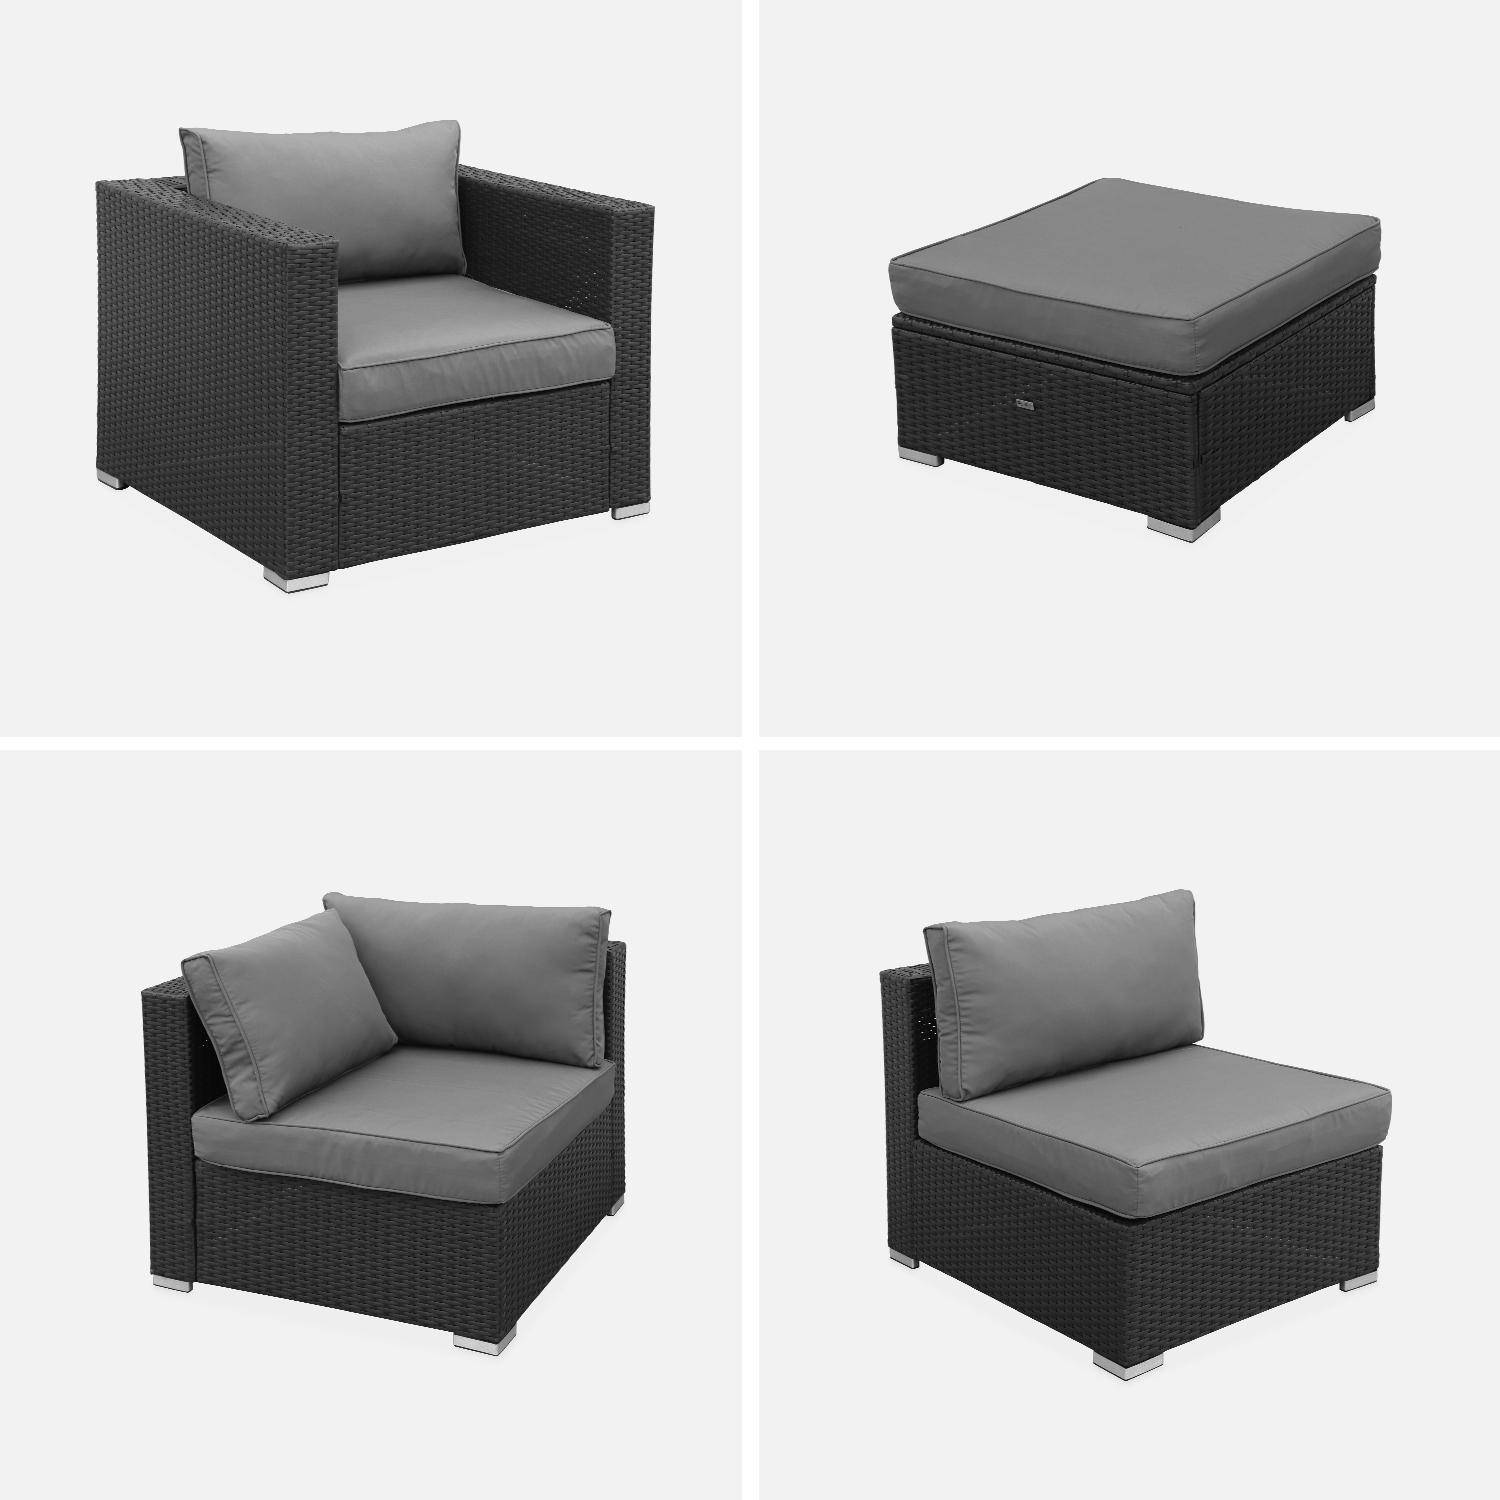 Gartengarnitur aus Polyrattan - Caligari - Schwarze, graue Kissen - 5 Plätze - 1 Sessel, 1 Sessel ohne Armlehne, 1 Fußstütze, 2 Ecksessel, ein Couchtisch Photo4